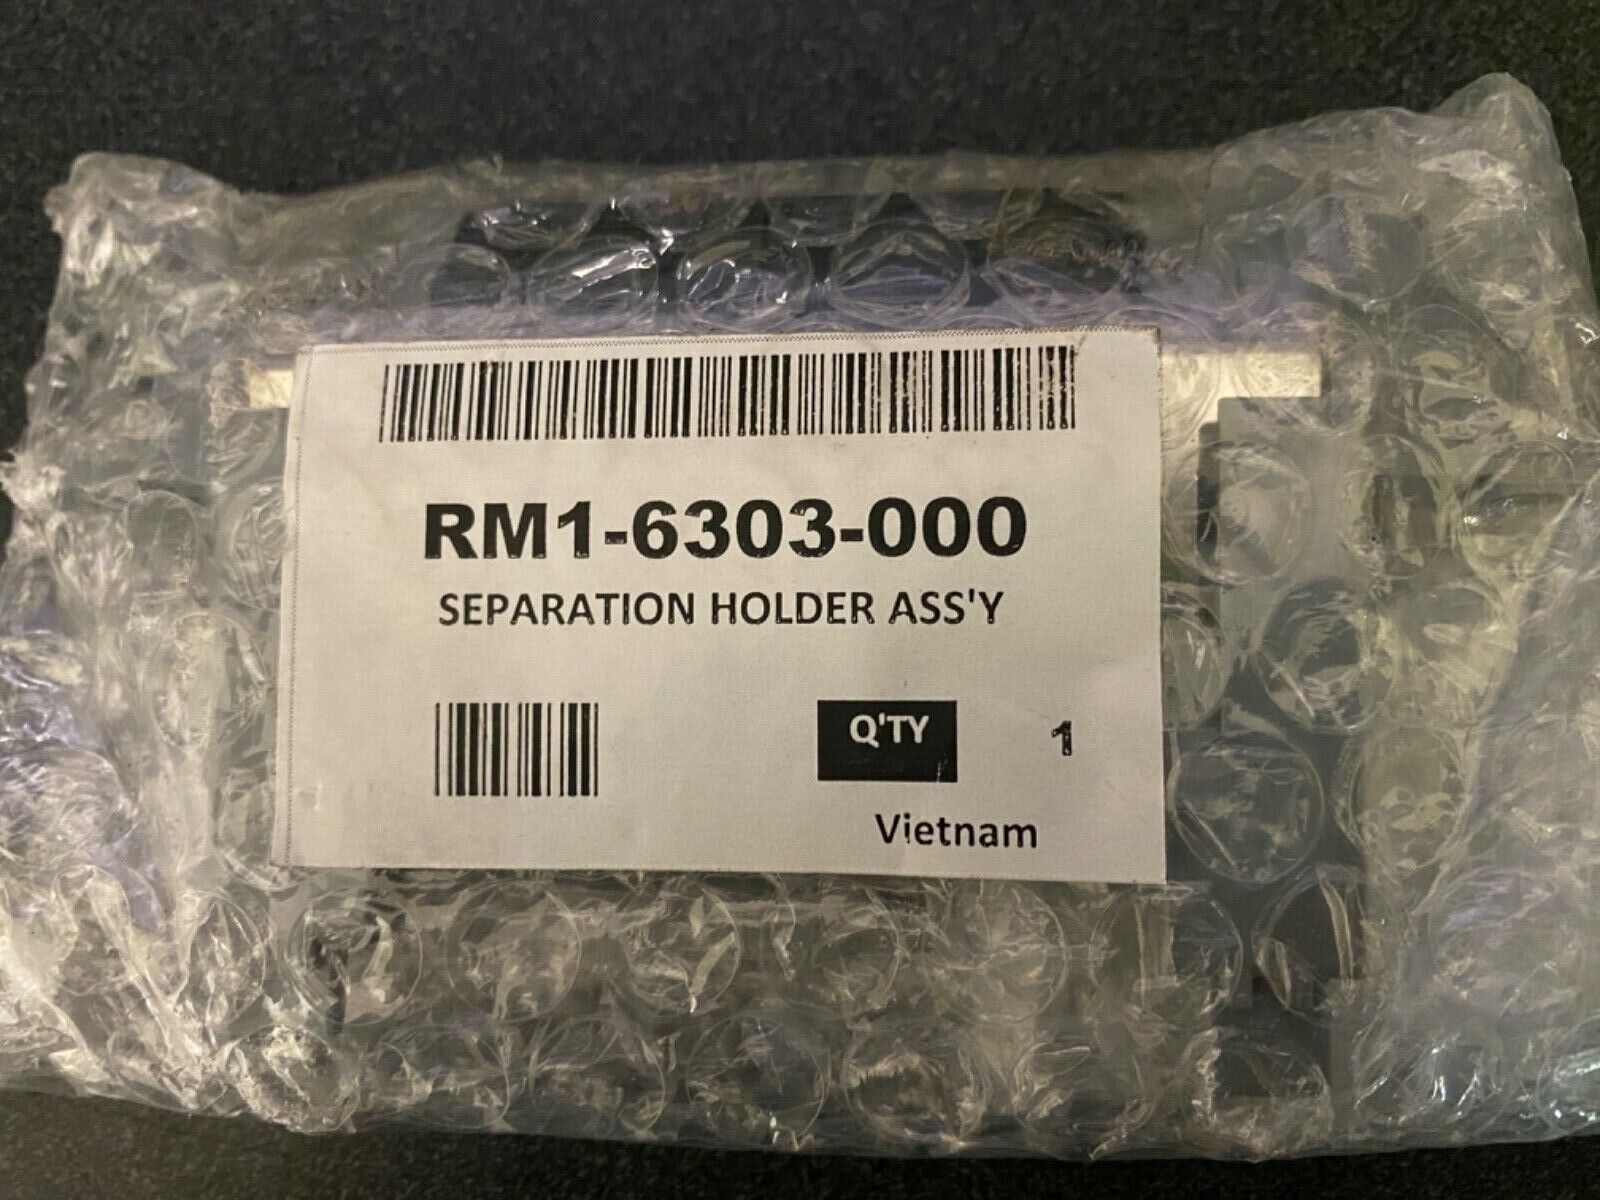 Soporte de separación HP RM1 6303-000 Assy